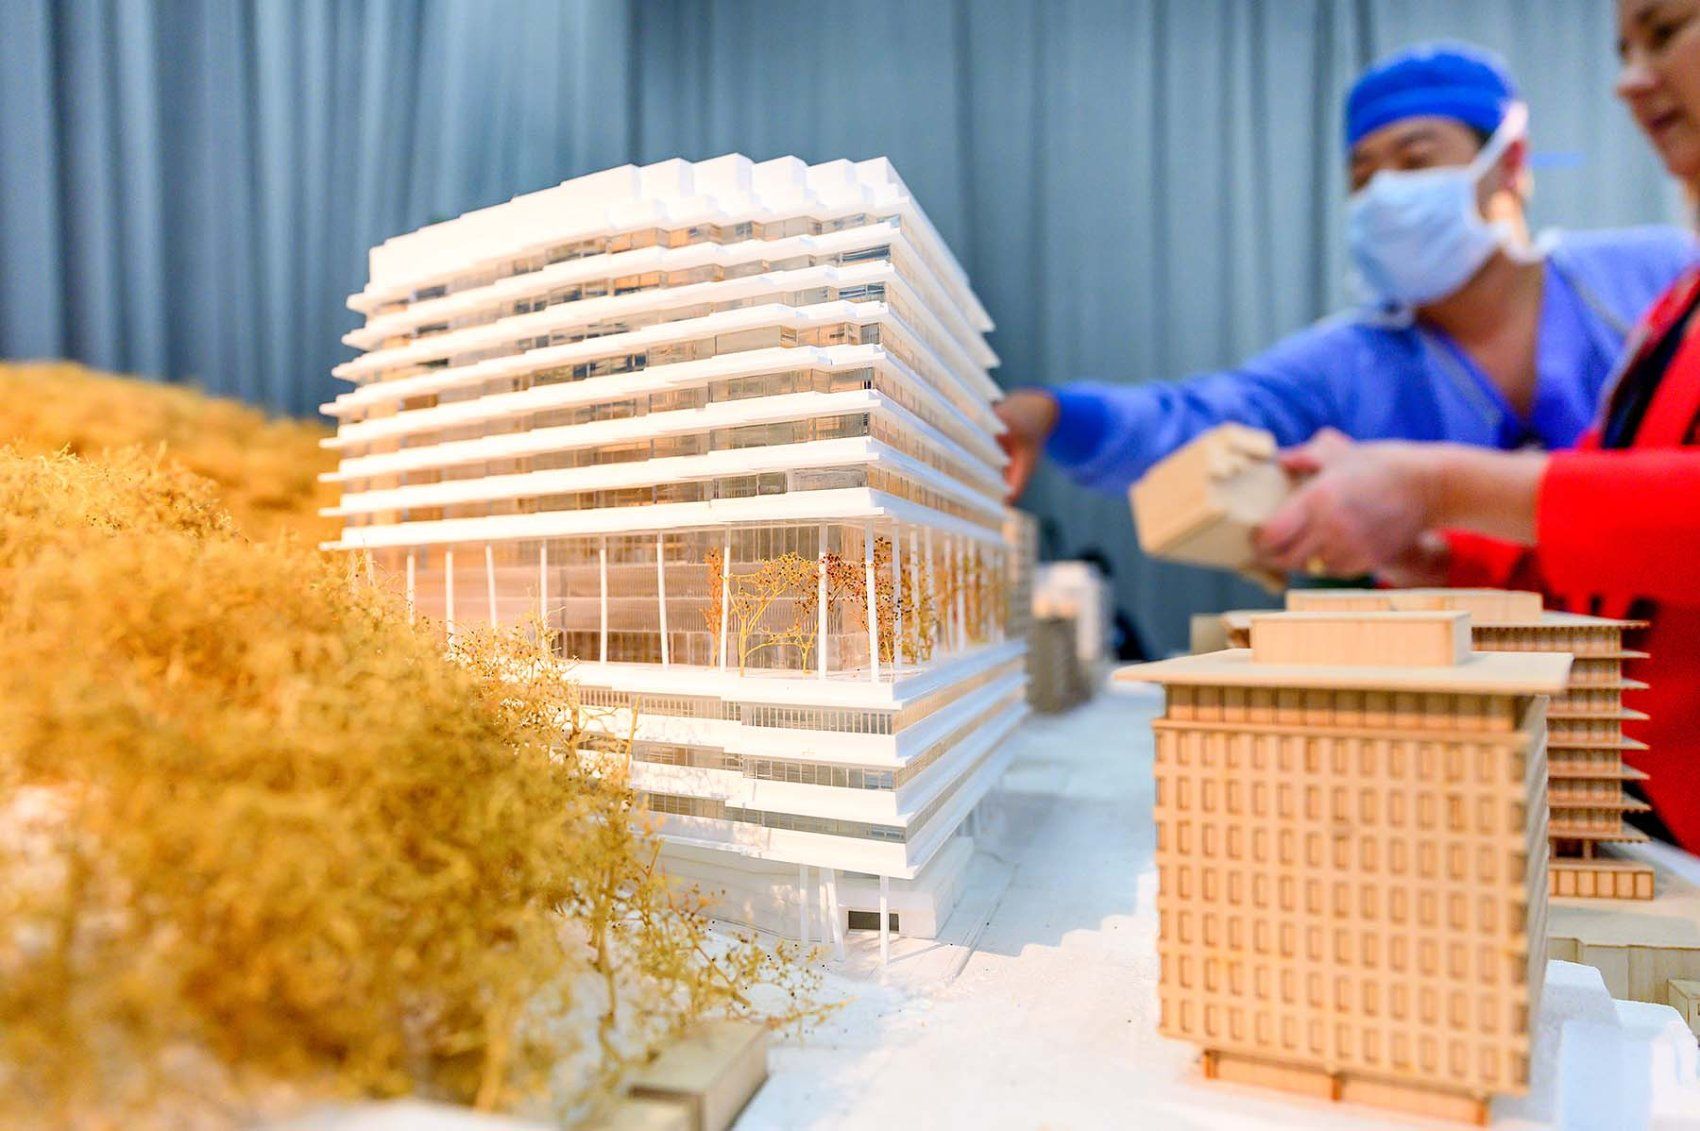 Les visiteurs interagissent avec une maquette du nouveau bâtiment de l'hôpital, complétée par de petits arbres contre le mont Sutro.